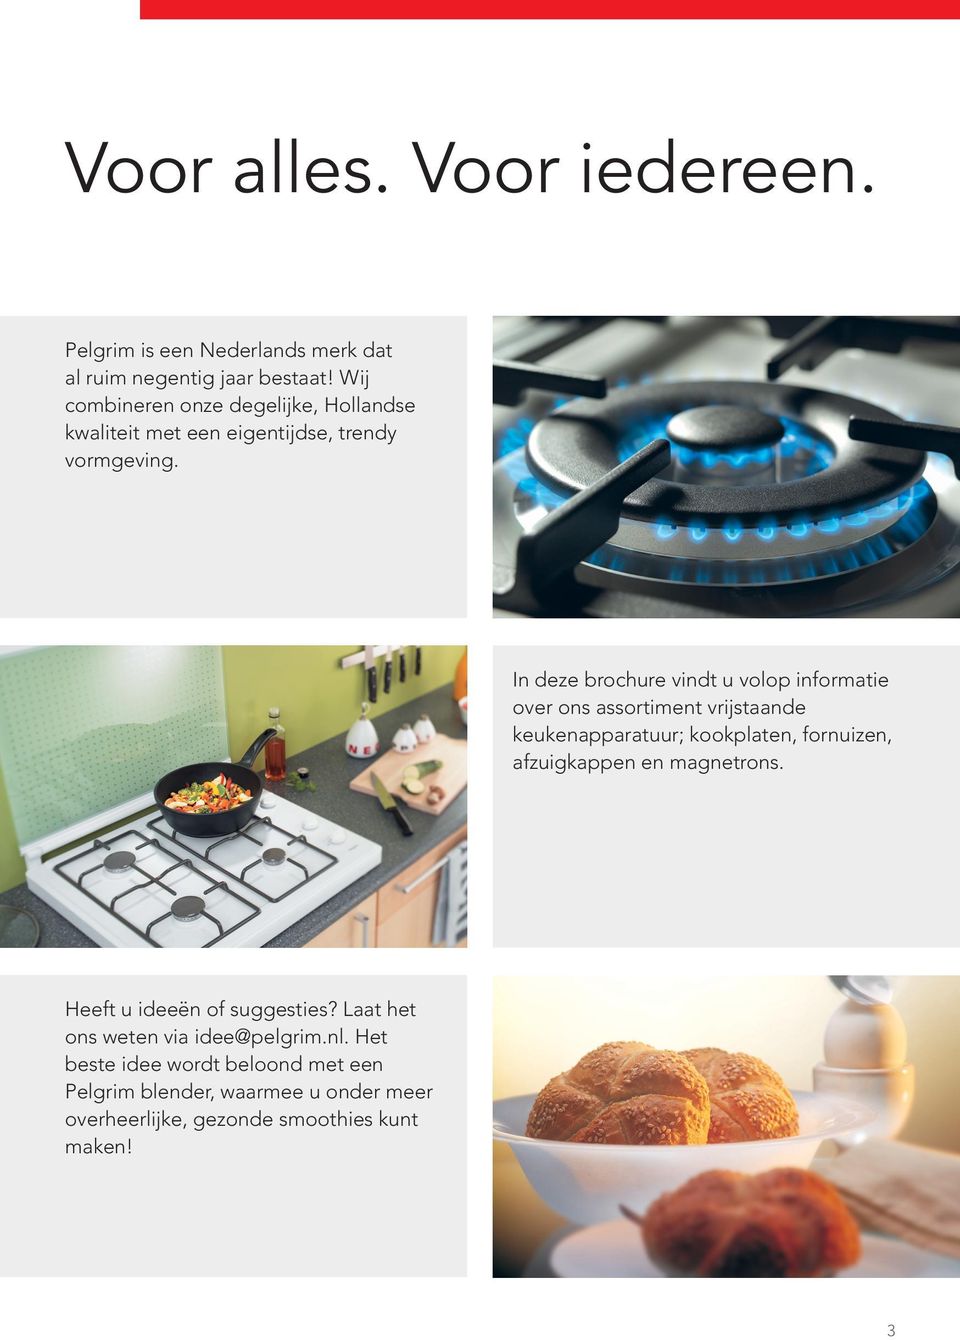 In deze brochure vindt u volop informatie over ons assortiment vrijstaande keukenapparatuur; kookplaten, fornuizen, afzuigkappen